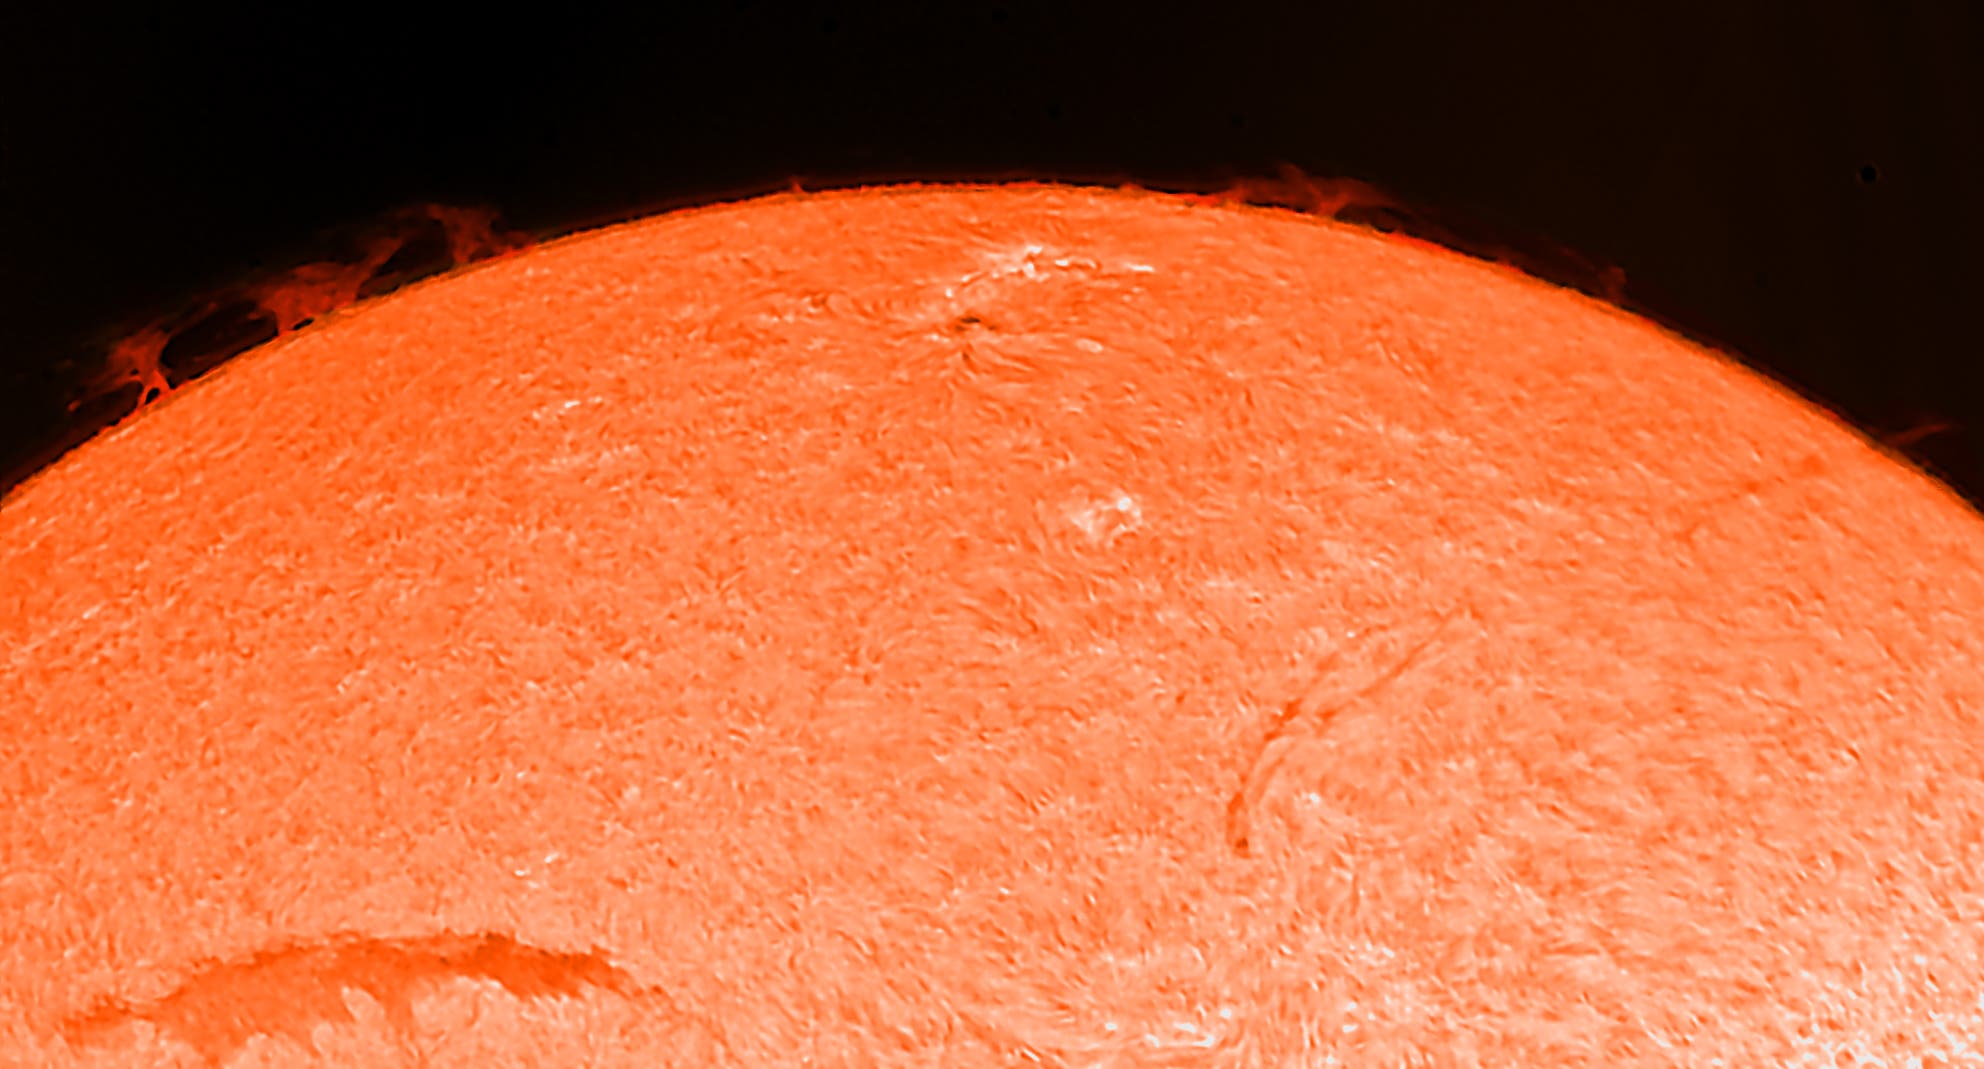 Aktive Sonnenregion am 21. September 2015